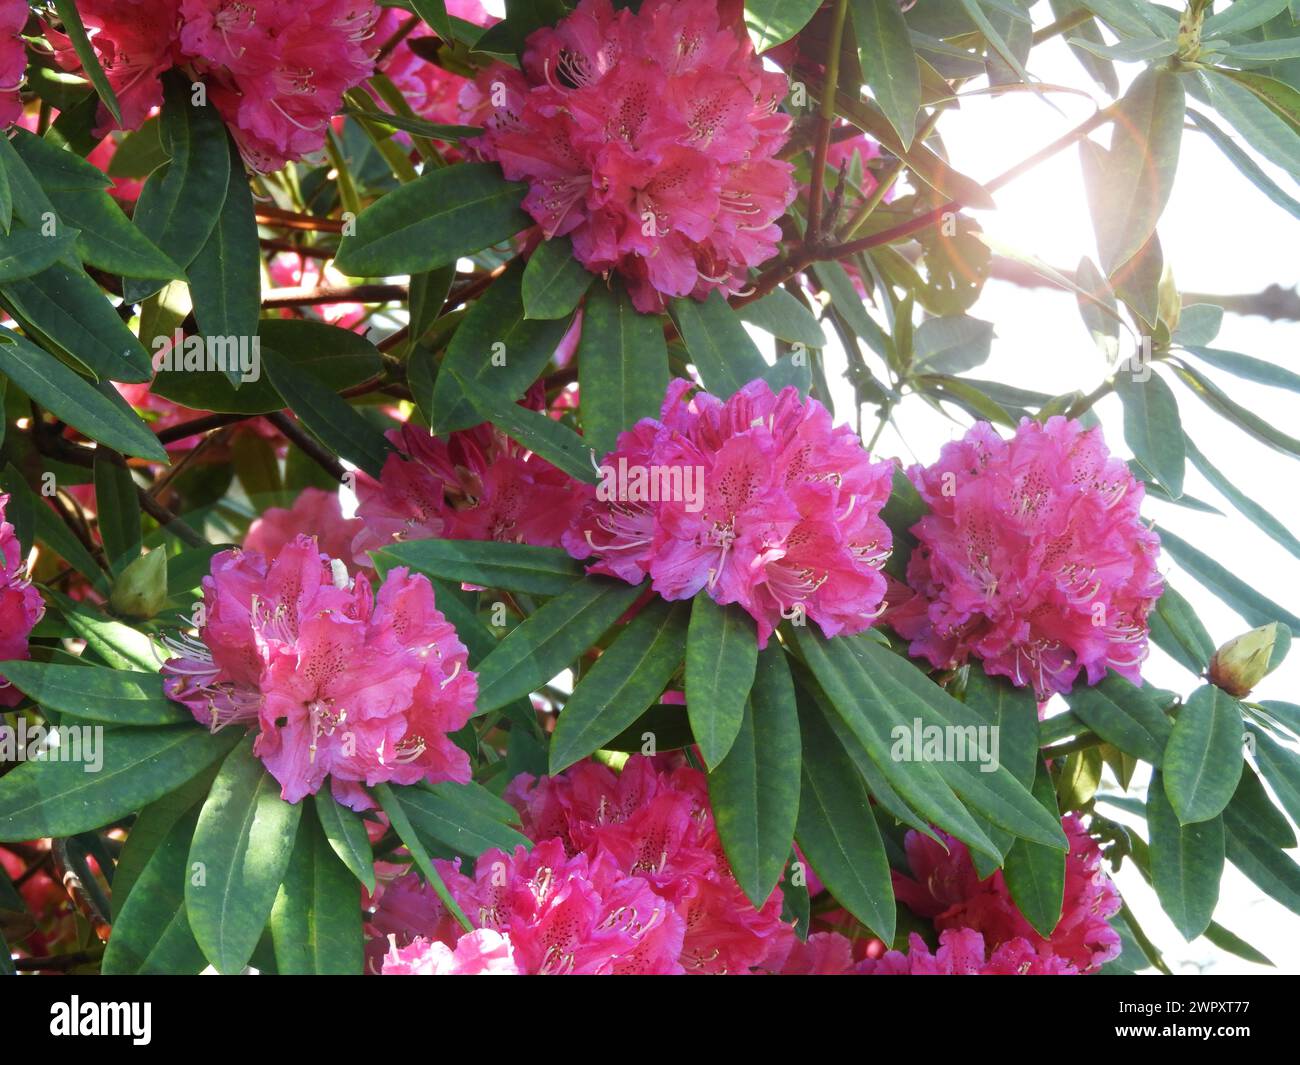 Überfluss an hellrosa Rhododendron Ponticum Blüten im sonnigen Garten. Gewöhnliche Rhododendron- oder pontische Rhododendron-blühende Pflanze in voller Blüte. Stockfoto